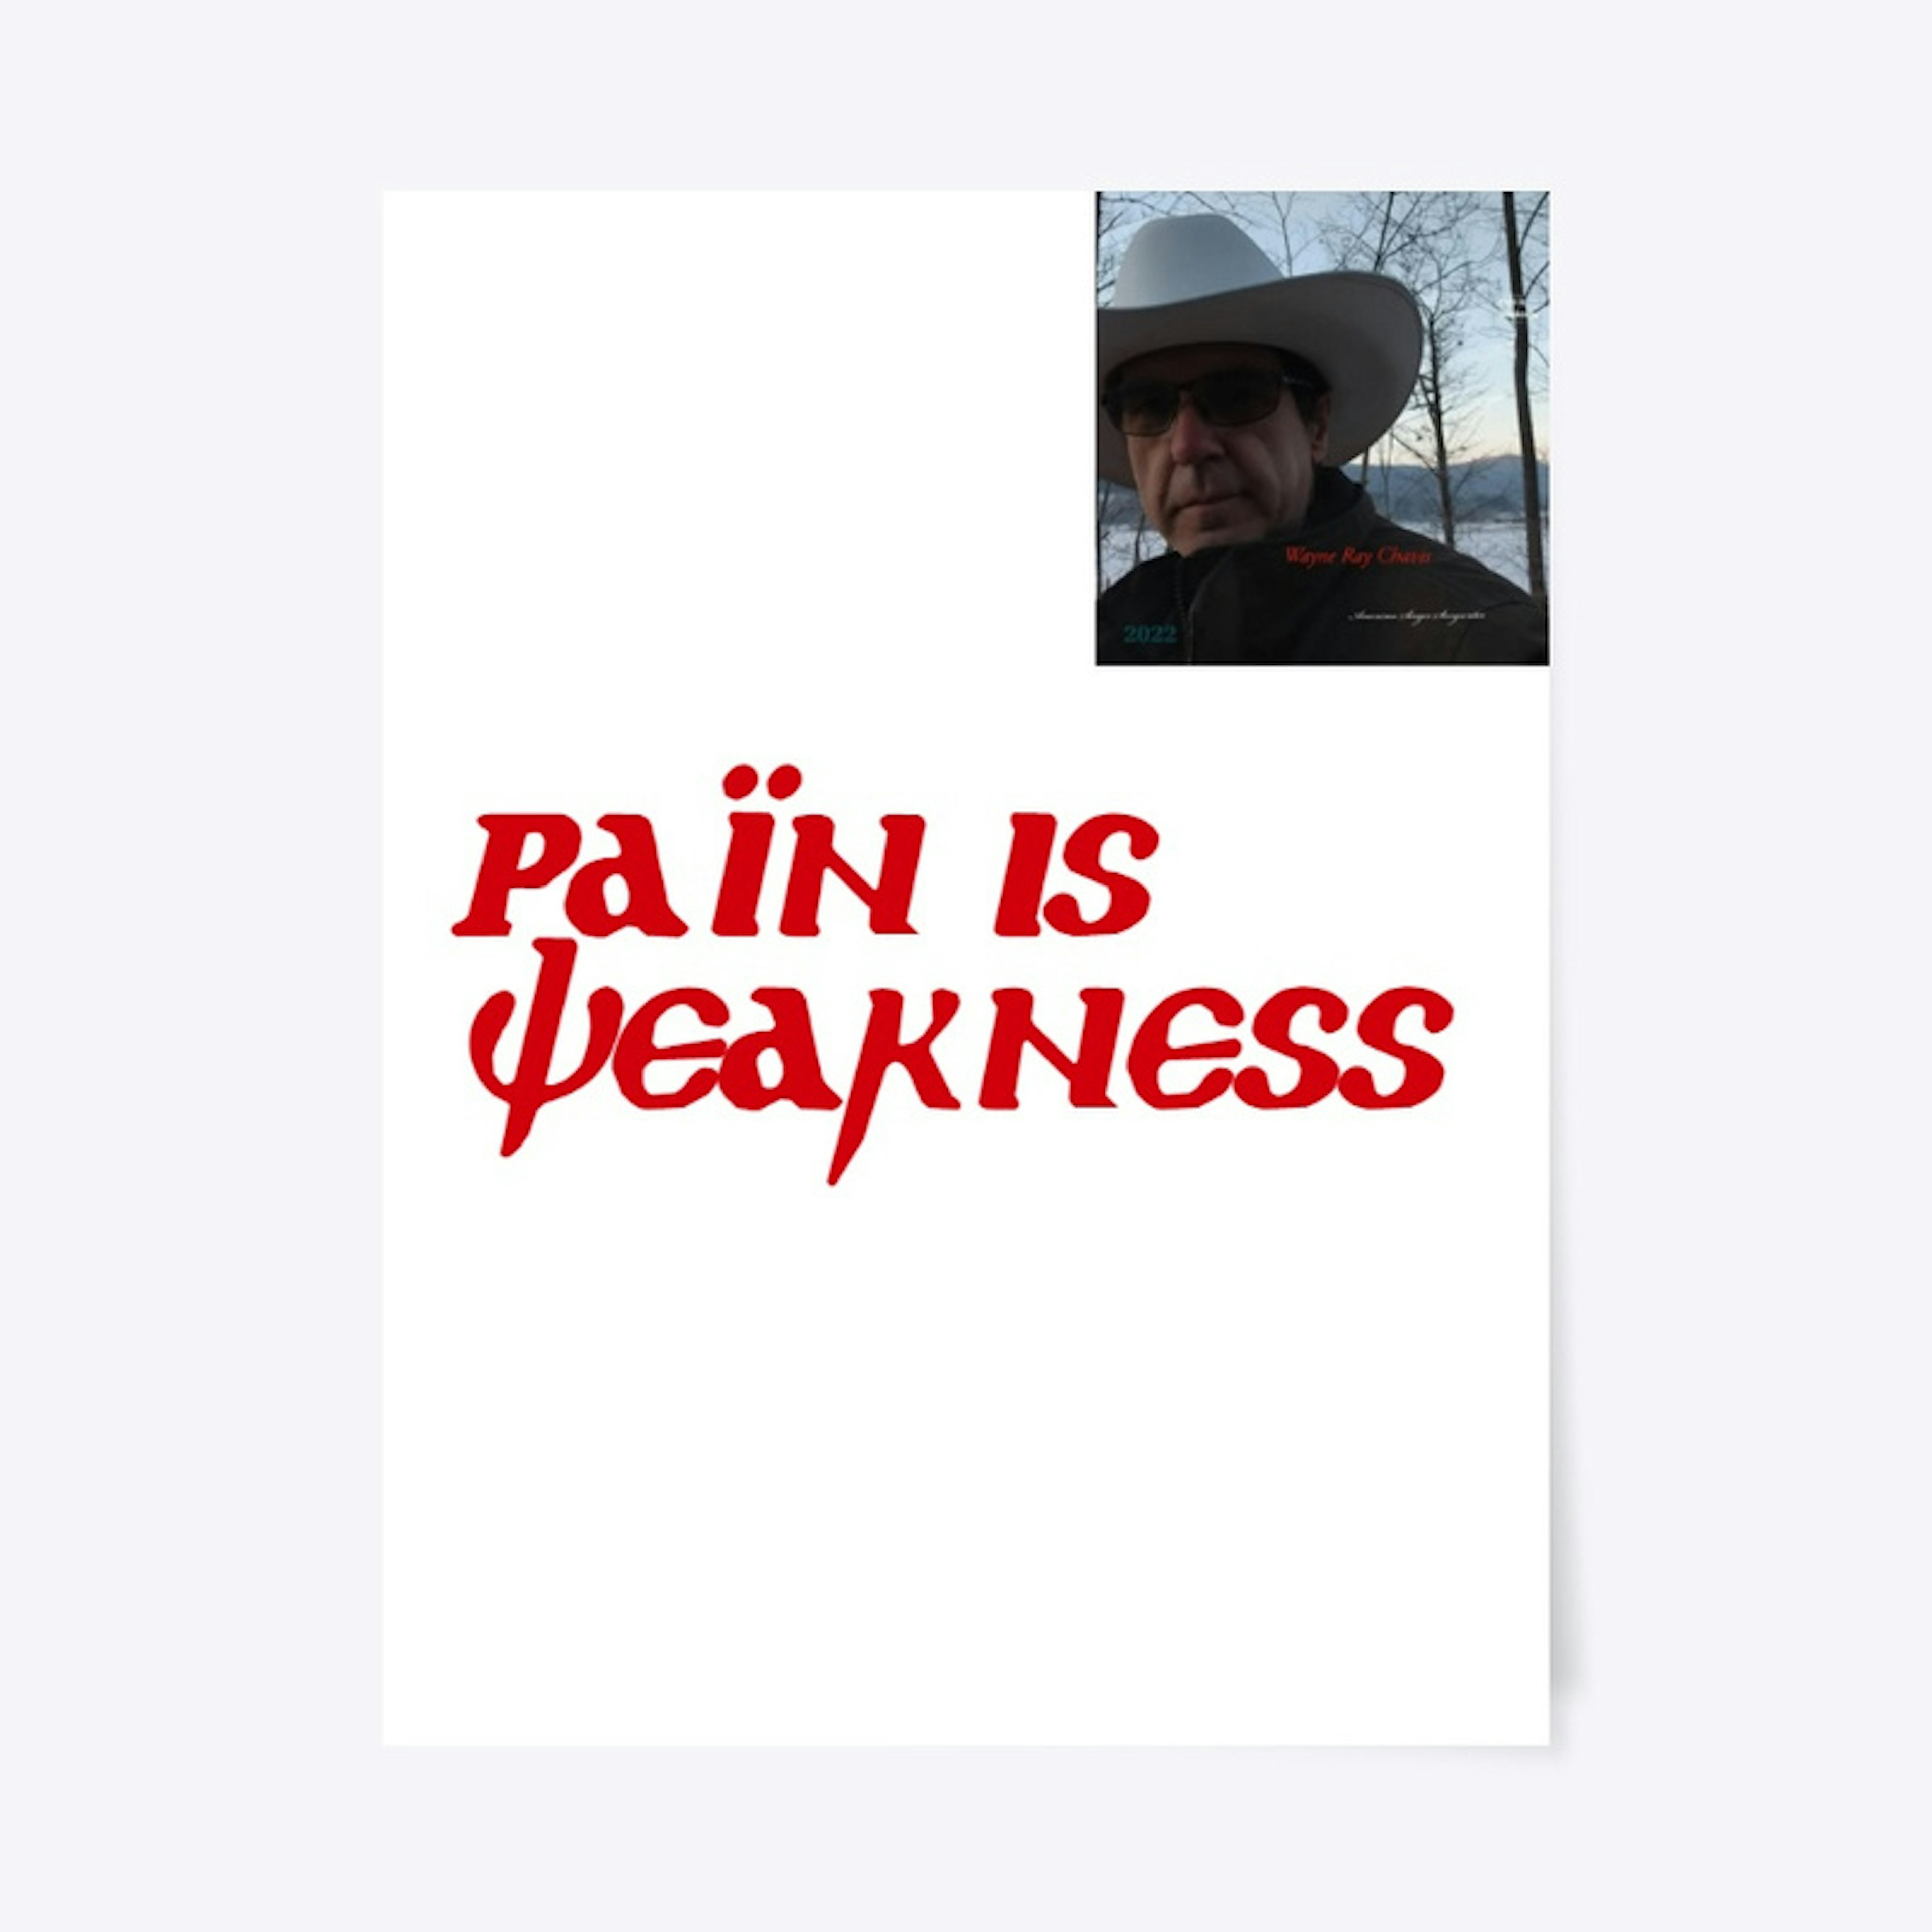 Pain is Weakness